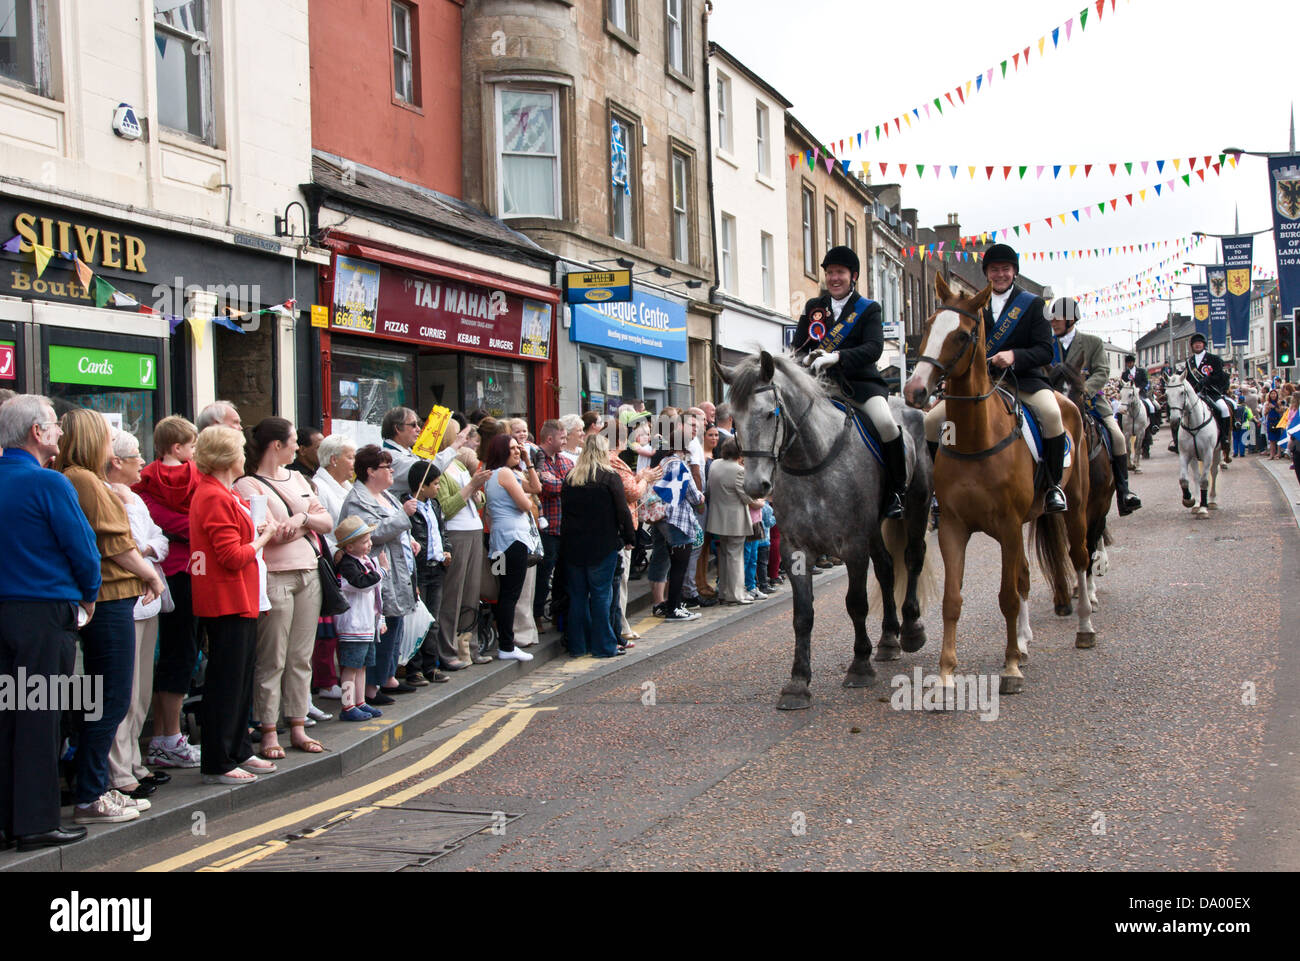 La célébration du jour de Lanimer à Lanark, Lanarkshire, en Écosse, qui a lieu en juin de chaque année Banque D'Images